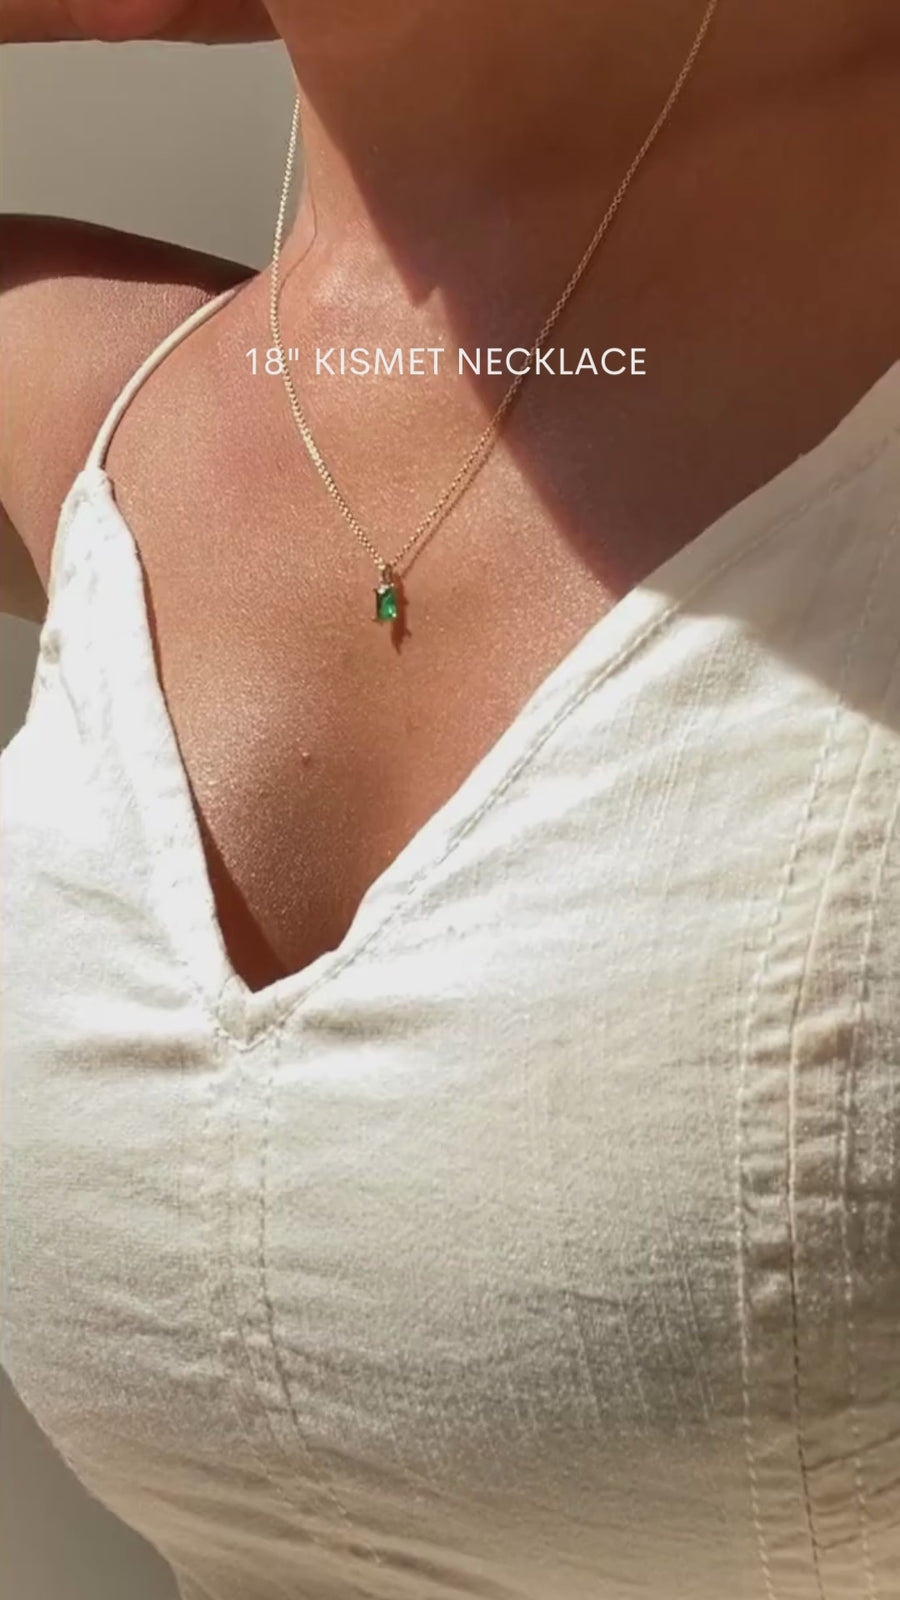 Kismet Necklace